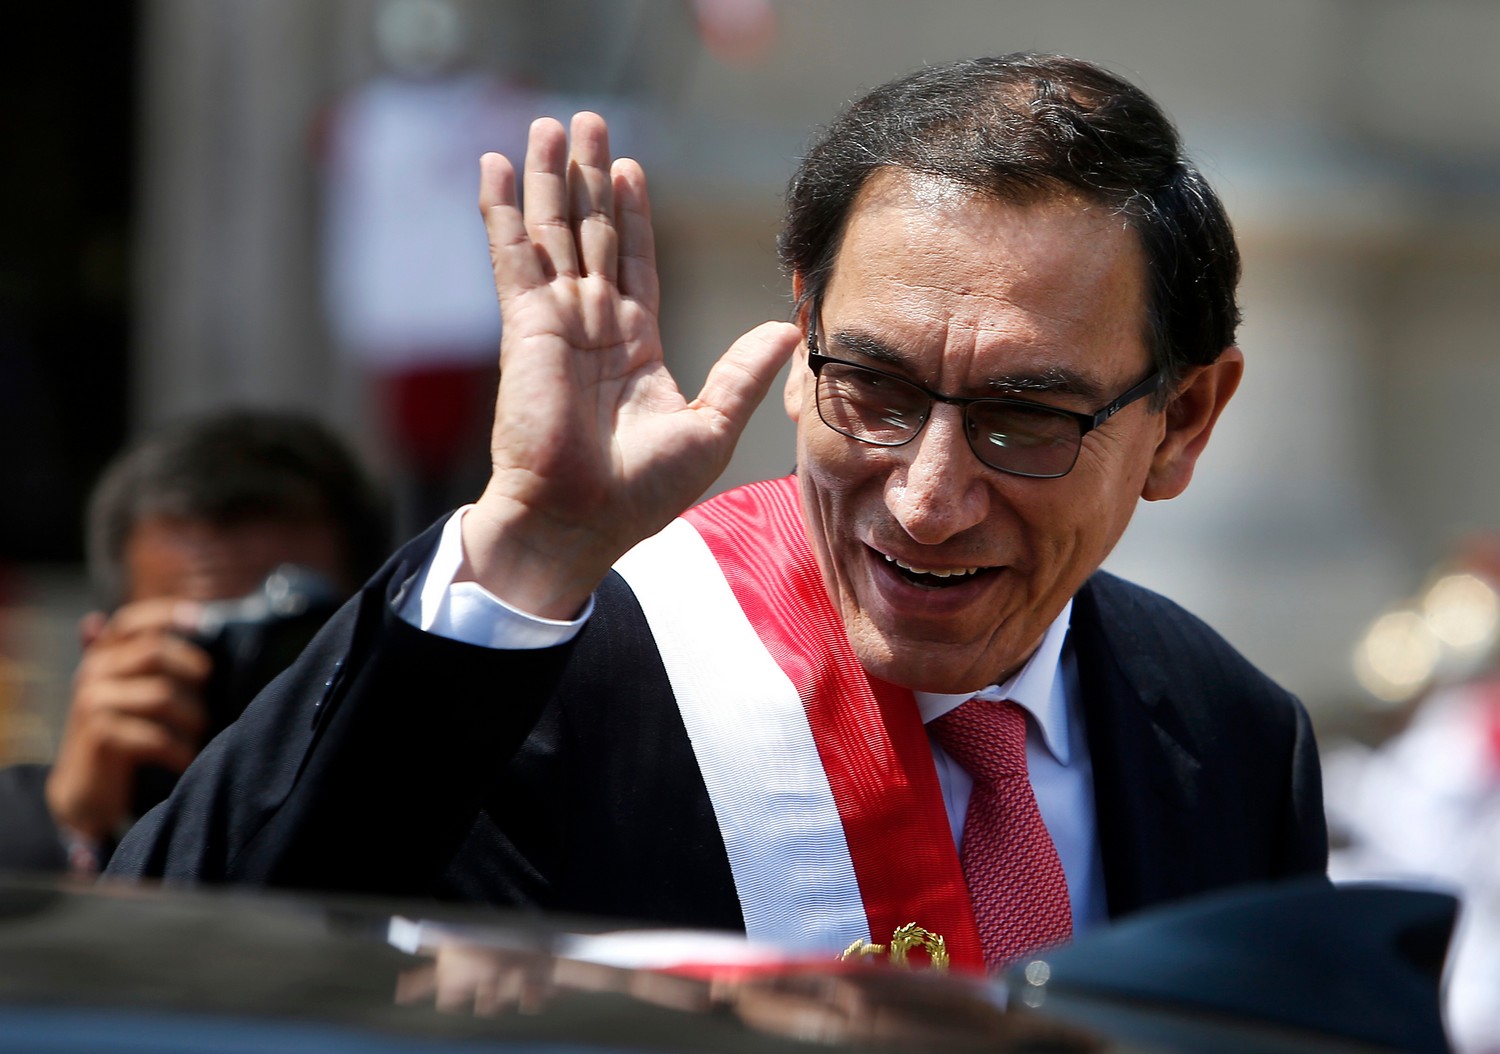 Καθαιρέθηκε ο πρόεδρος του Περού για “υπόθεση διαφθοράς”